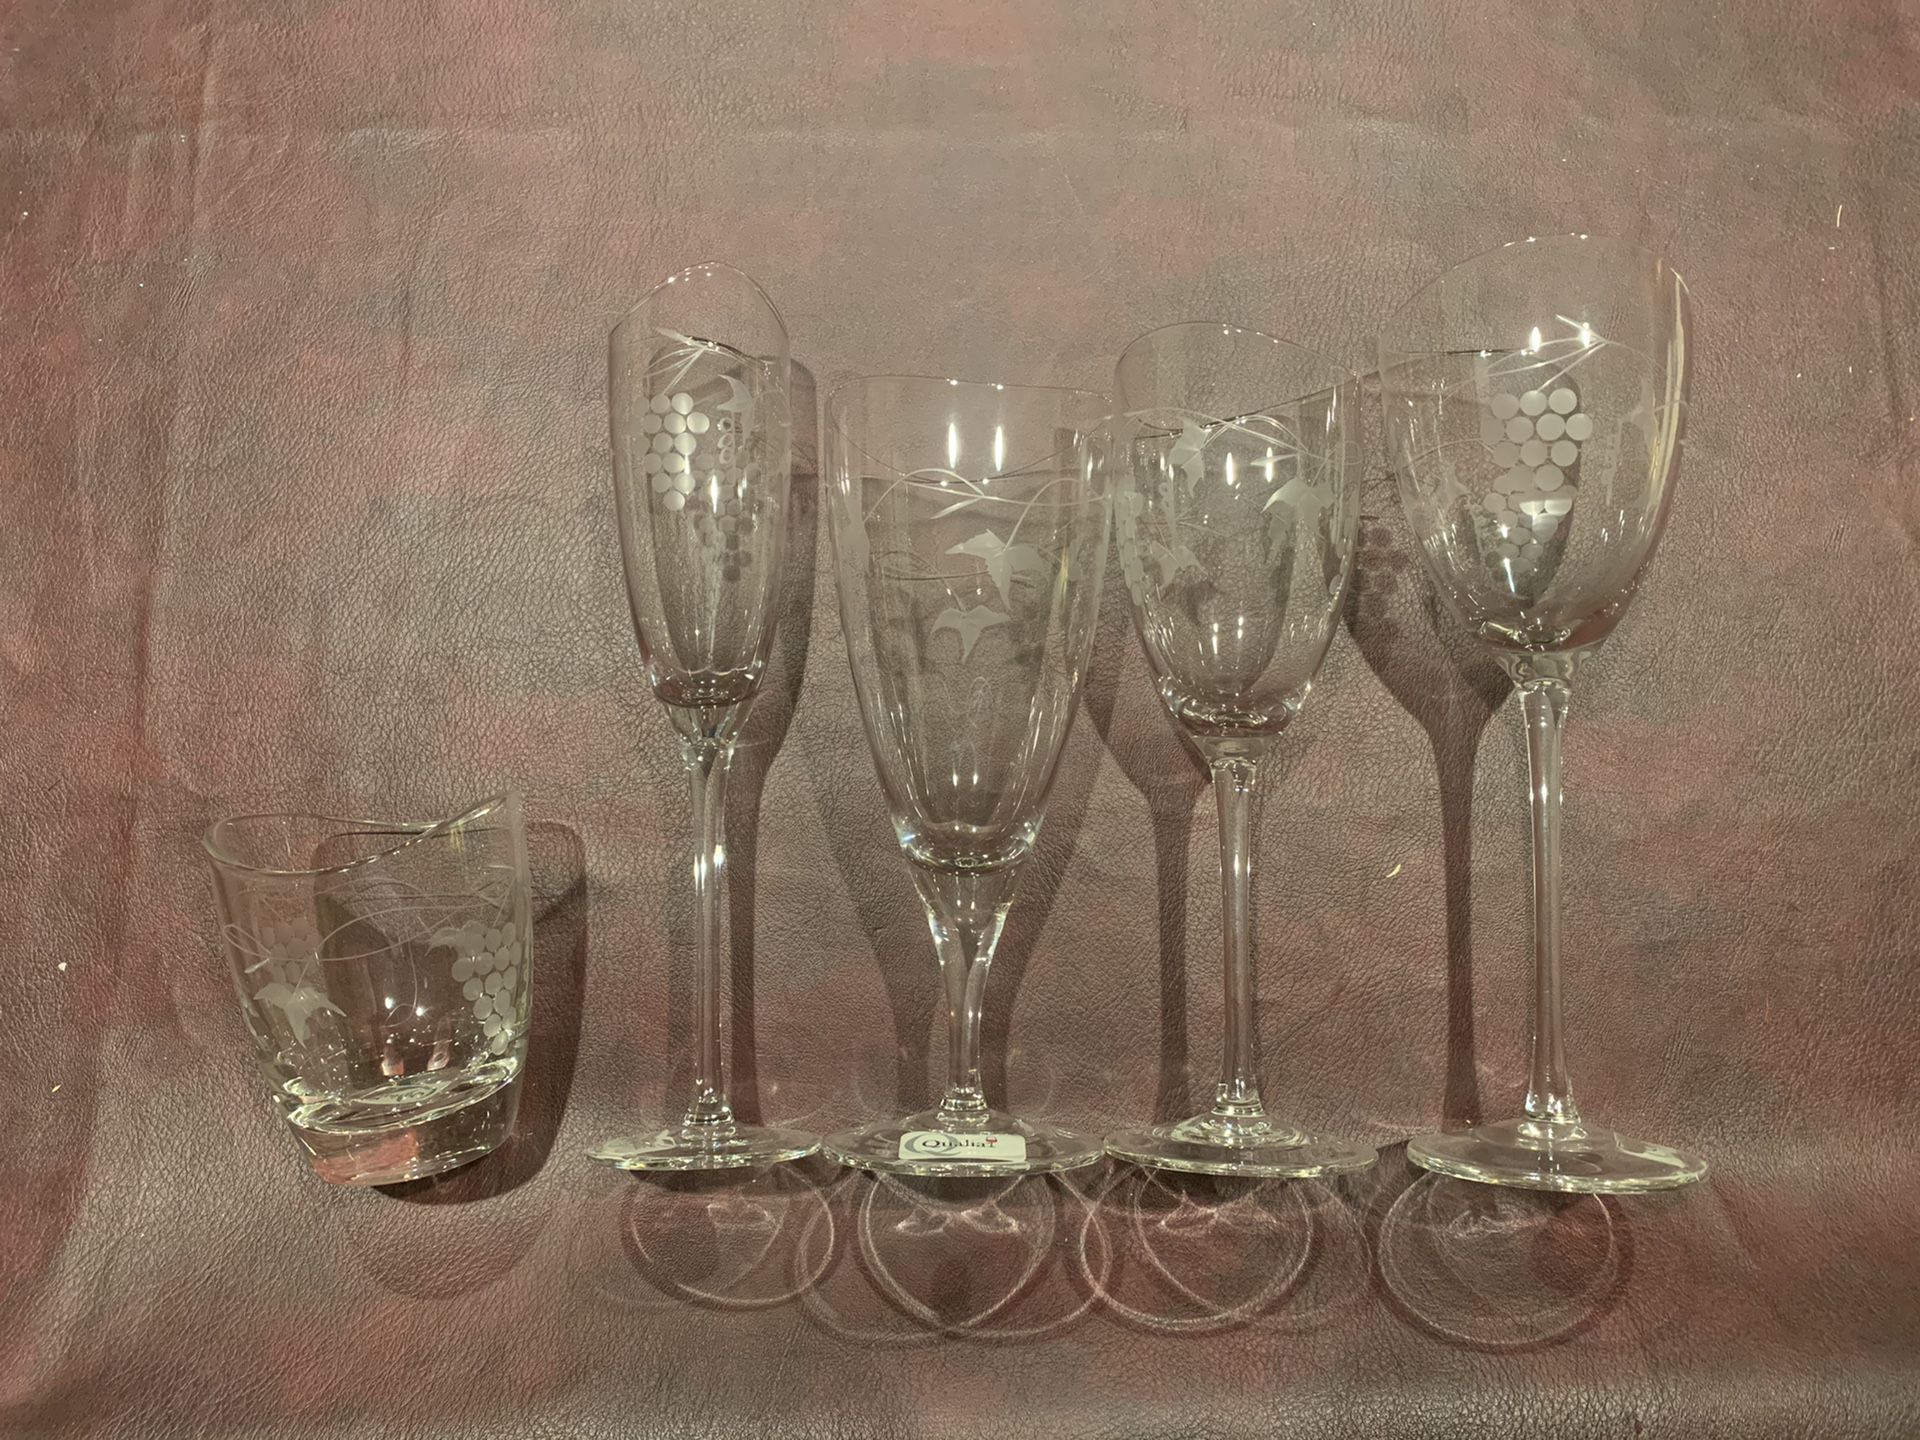 Formal glassware set